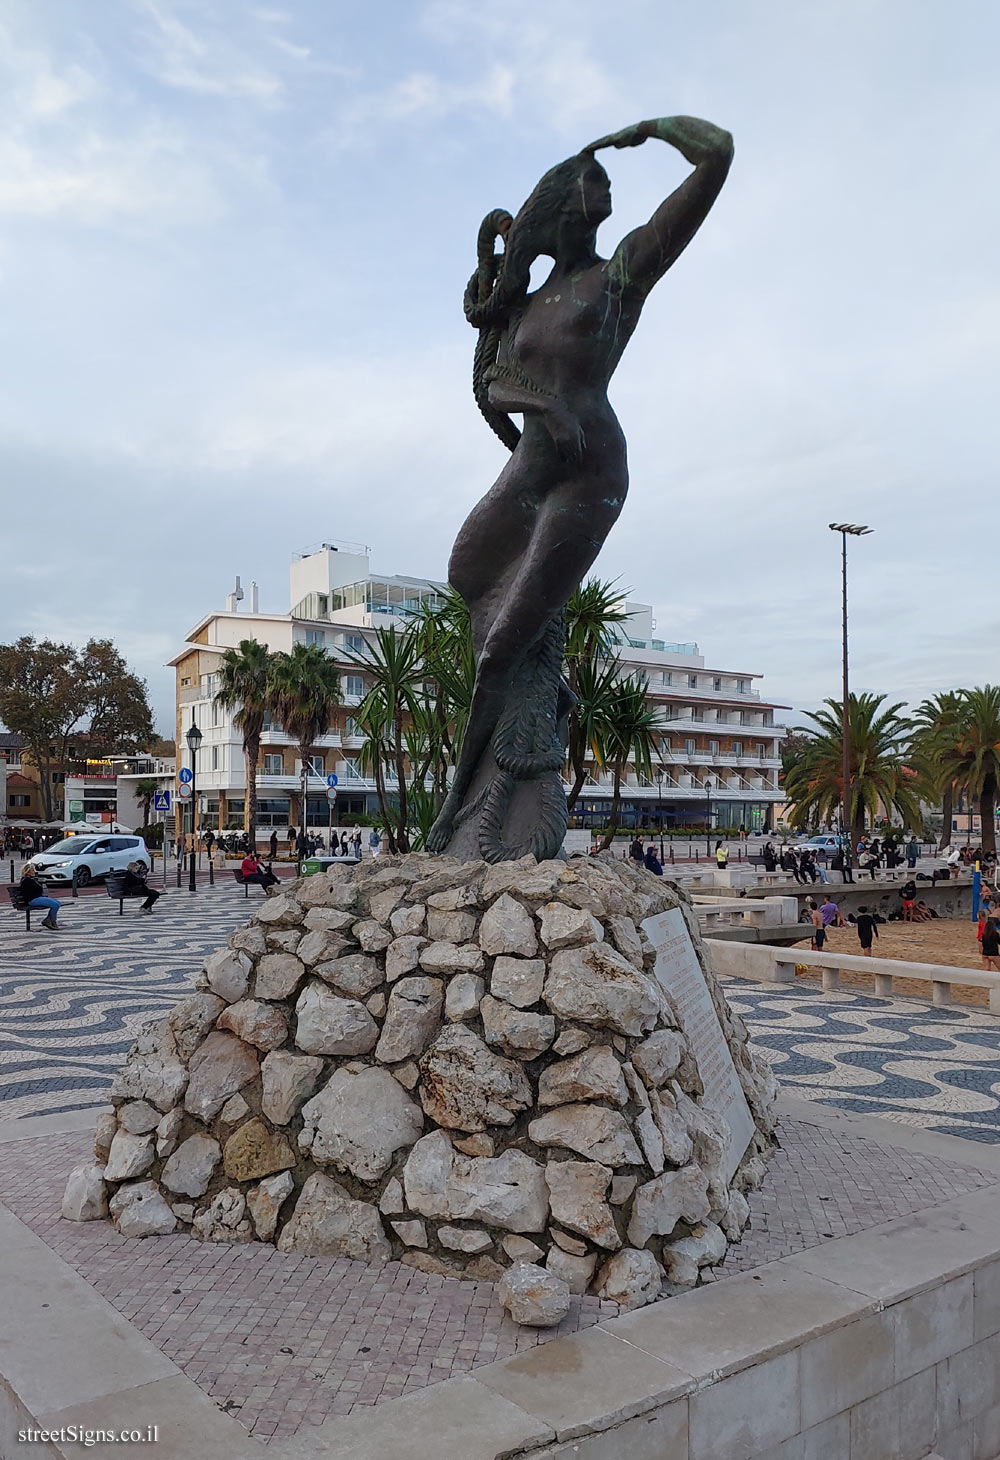 Cascais - a statue commemorating the Portuguese discoveries - Av. Dom Carlos I 2 78, 2750-642 Cascais, Portugal